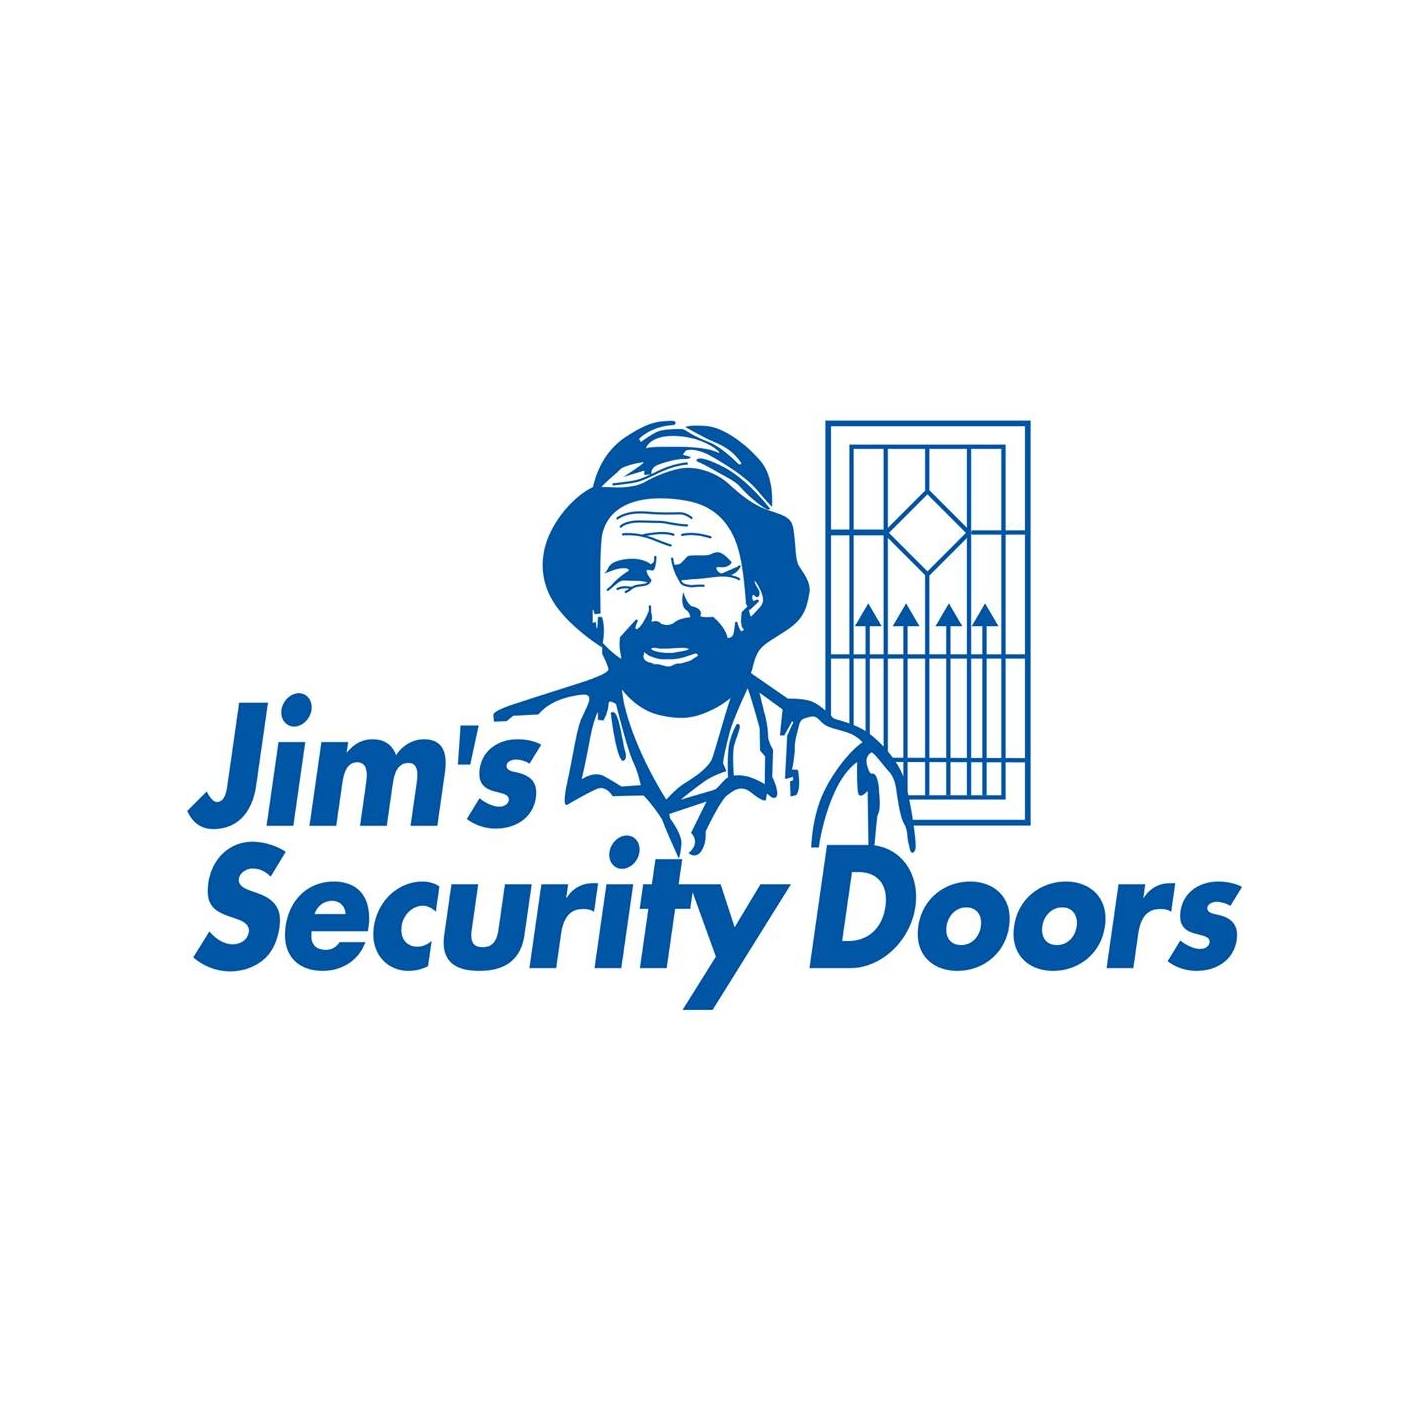 Jim’s Security Doors